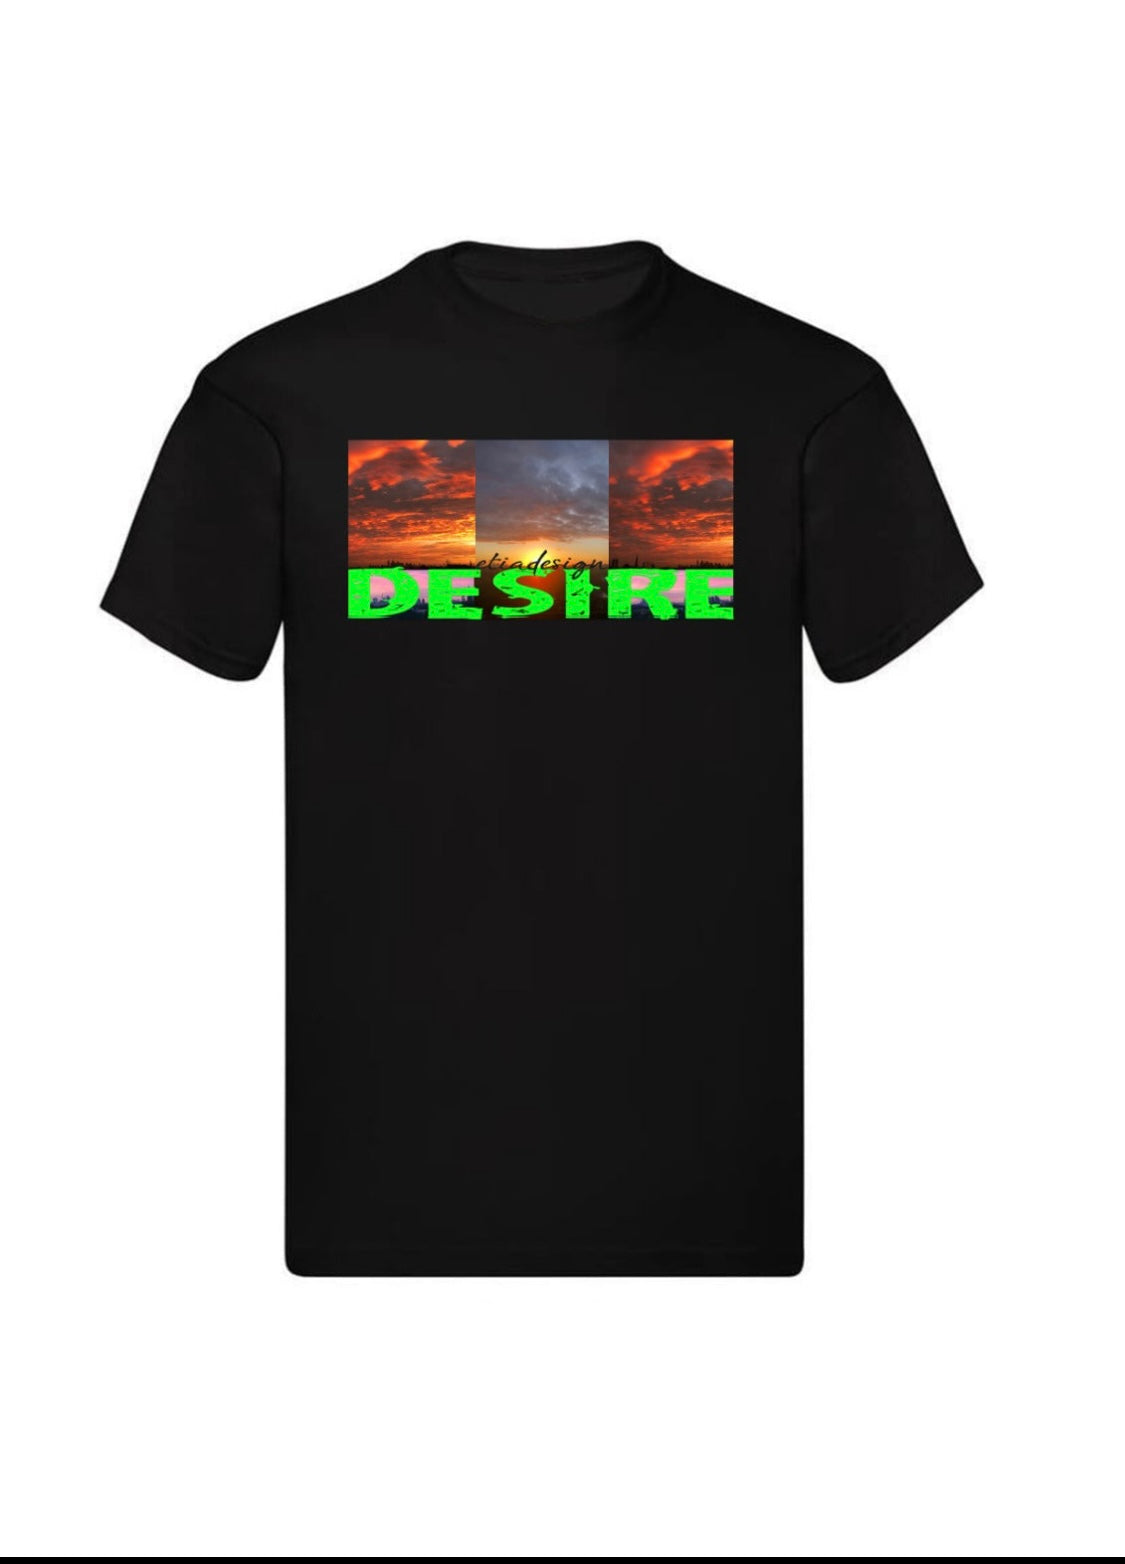 Desire Unisex Adult Size Cotton Premium T-shirts